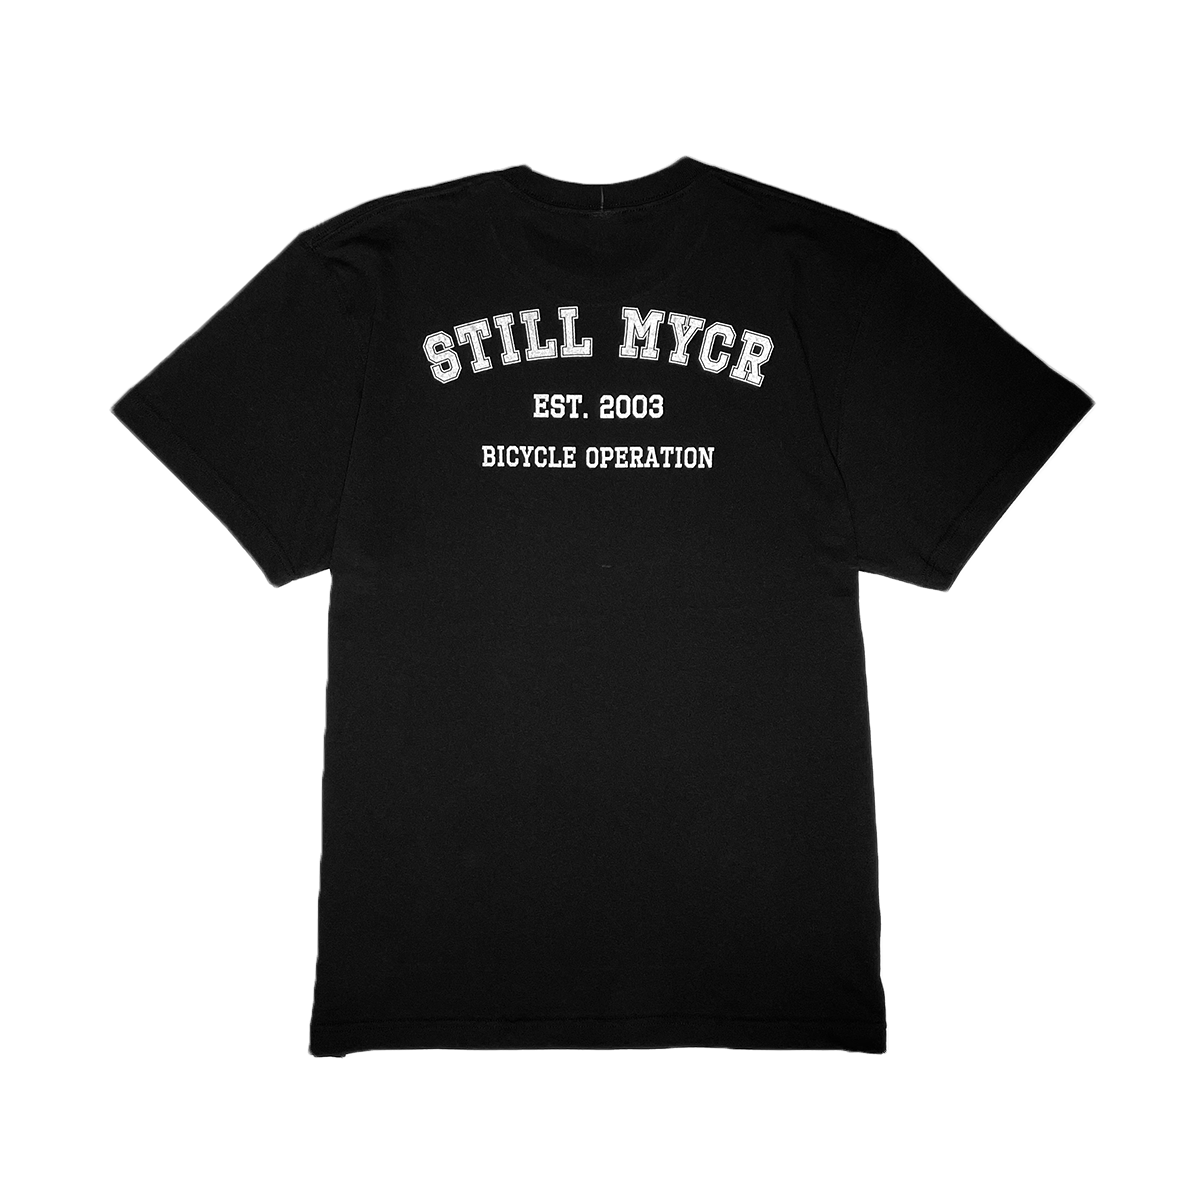 MOYACY – Still MYCR T-Shirt/Black